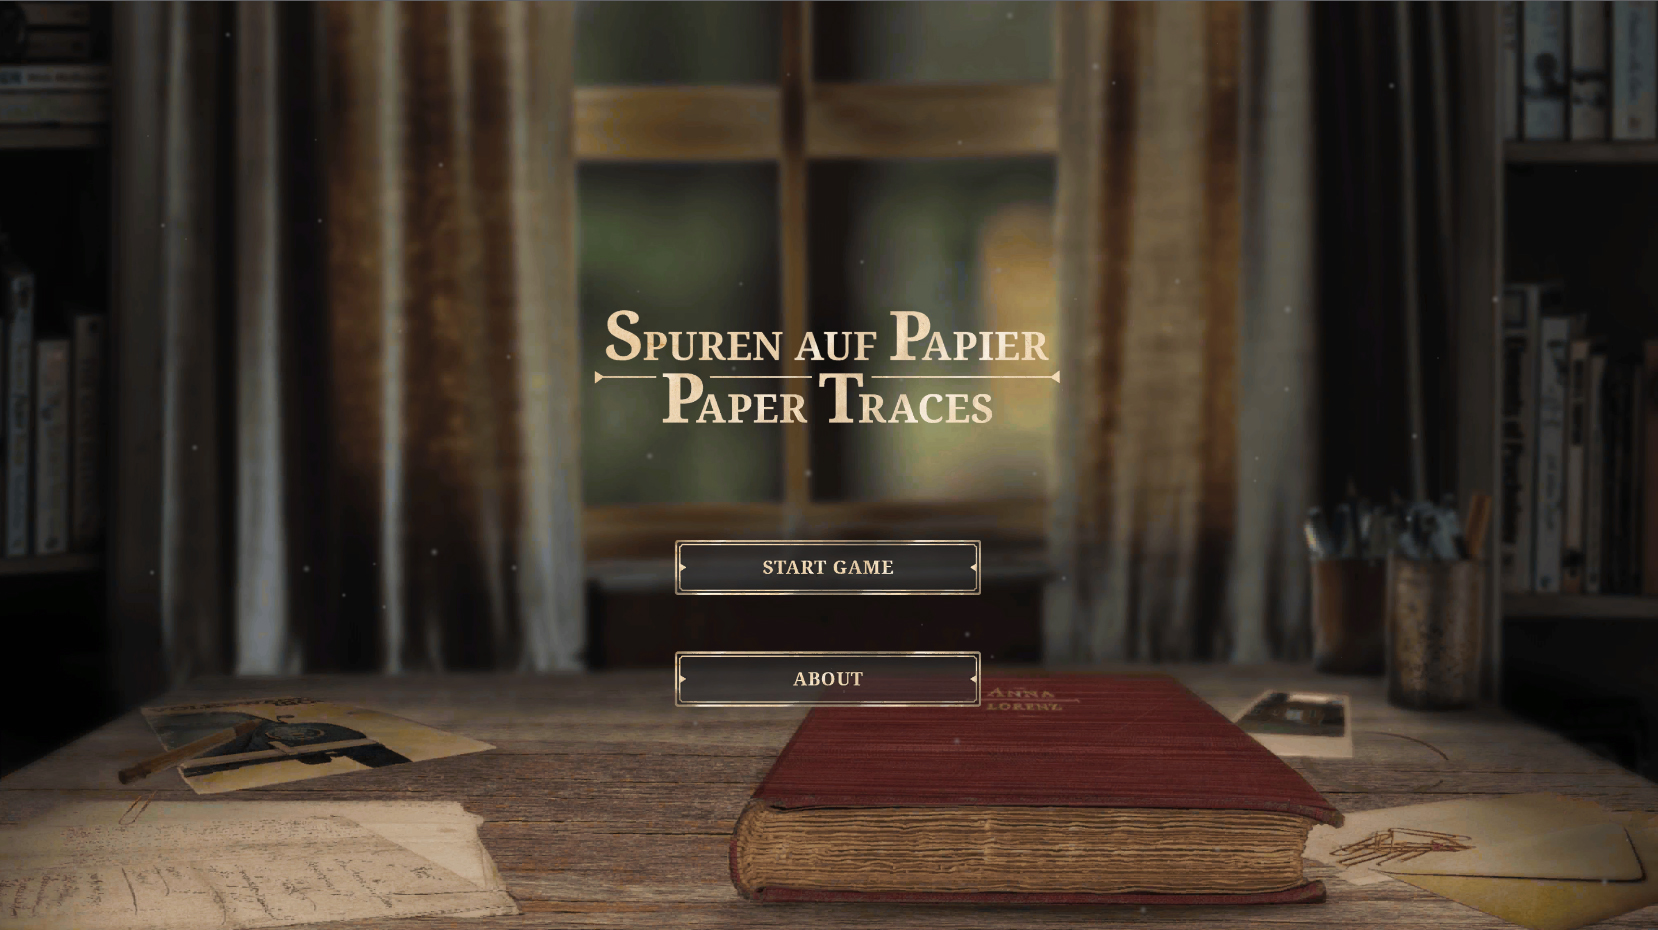 Spuren auf Papier - Paper Traces Startscreen zeigt ein rotes Buch auf einem Tisch mit alten Photos und Dokumenten.